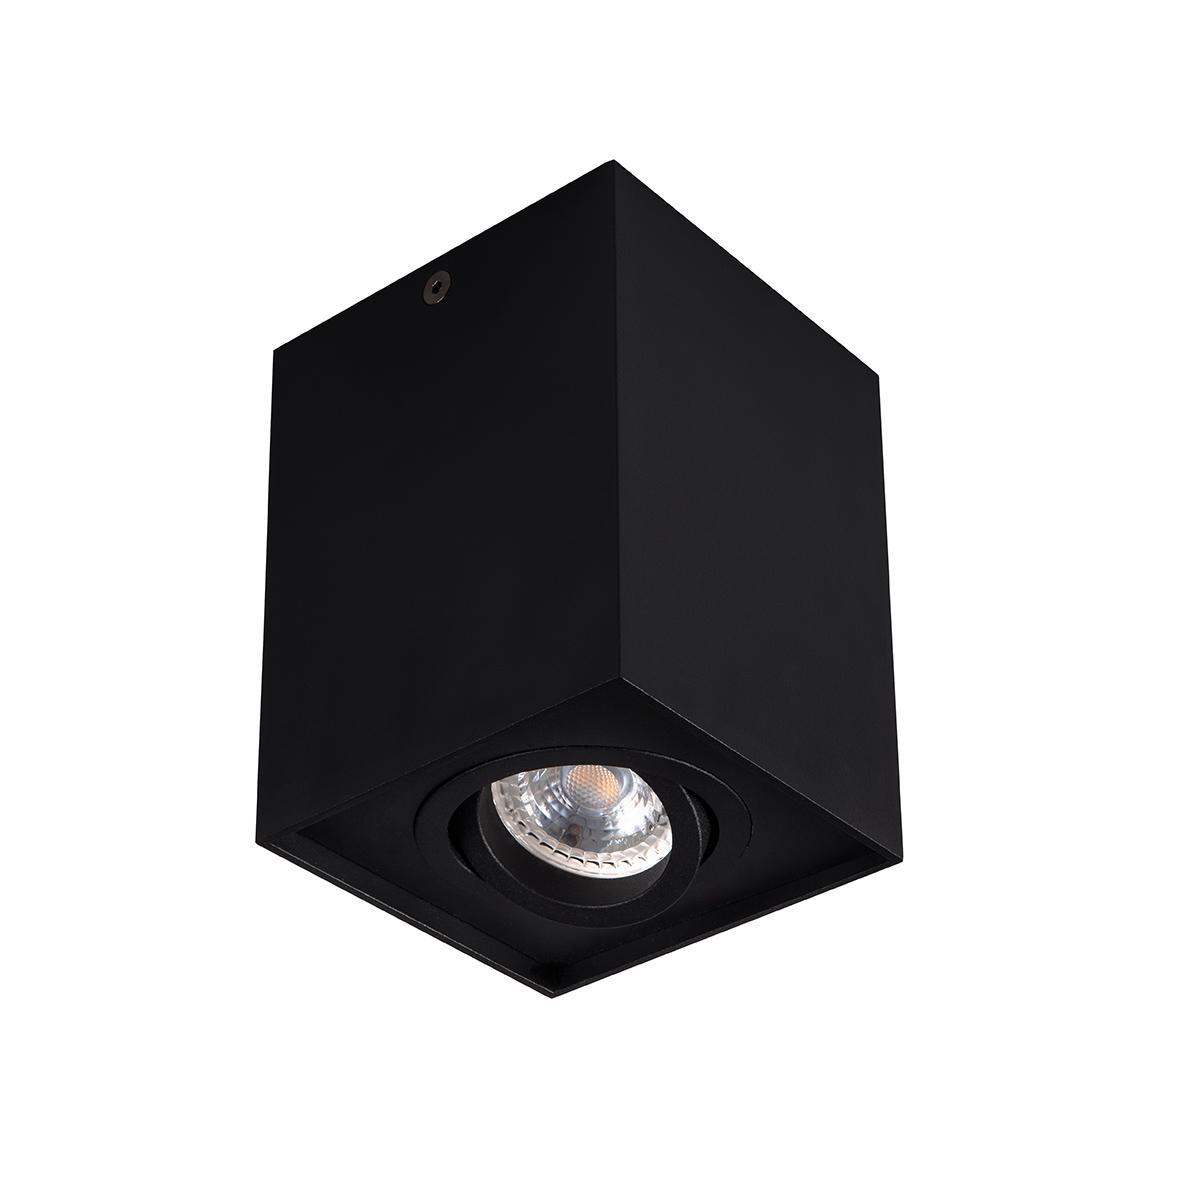 Накладной точечный светильник Kanlux GORD DLP 50-B 25471 накладной точечный светильник kanlux stobi dlp 250 w 26833